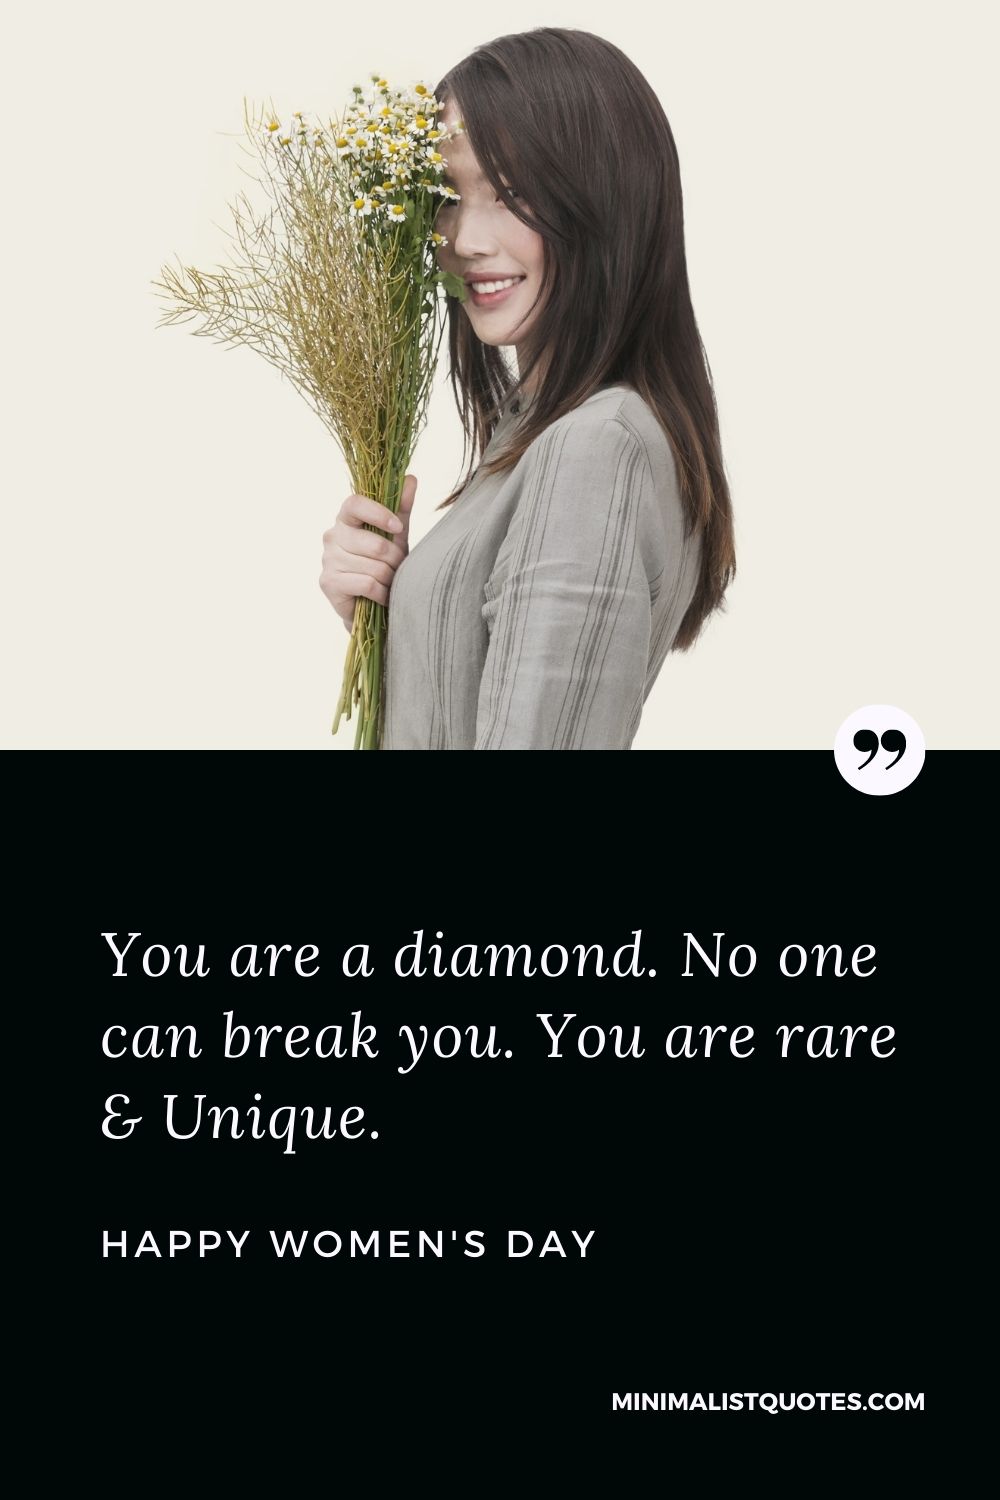 You are a diamond. No one can break you. You are rare & Unique ...